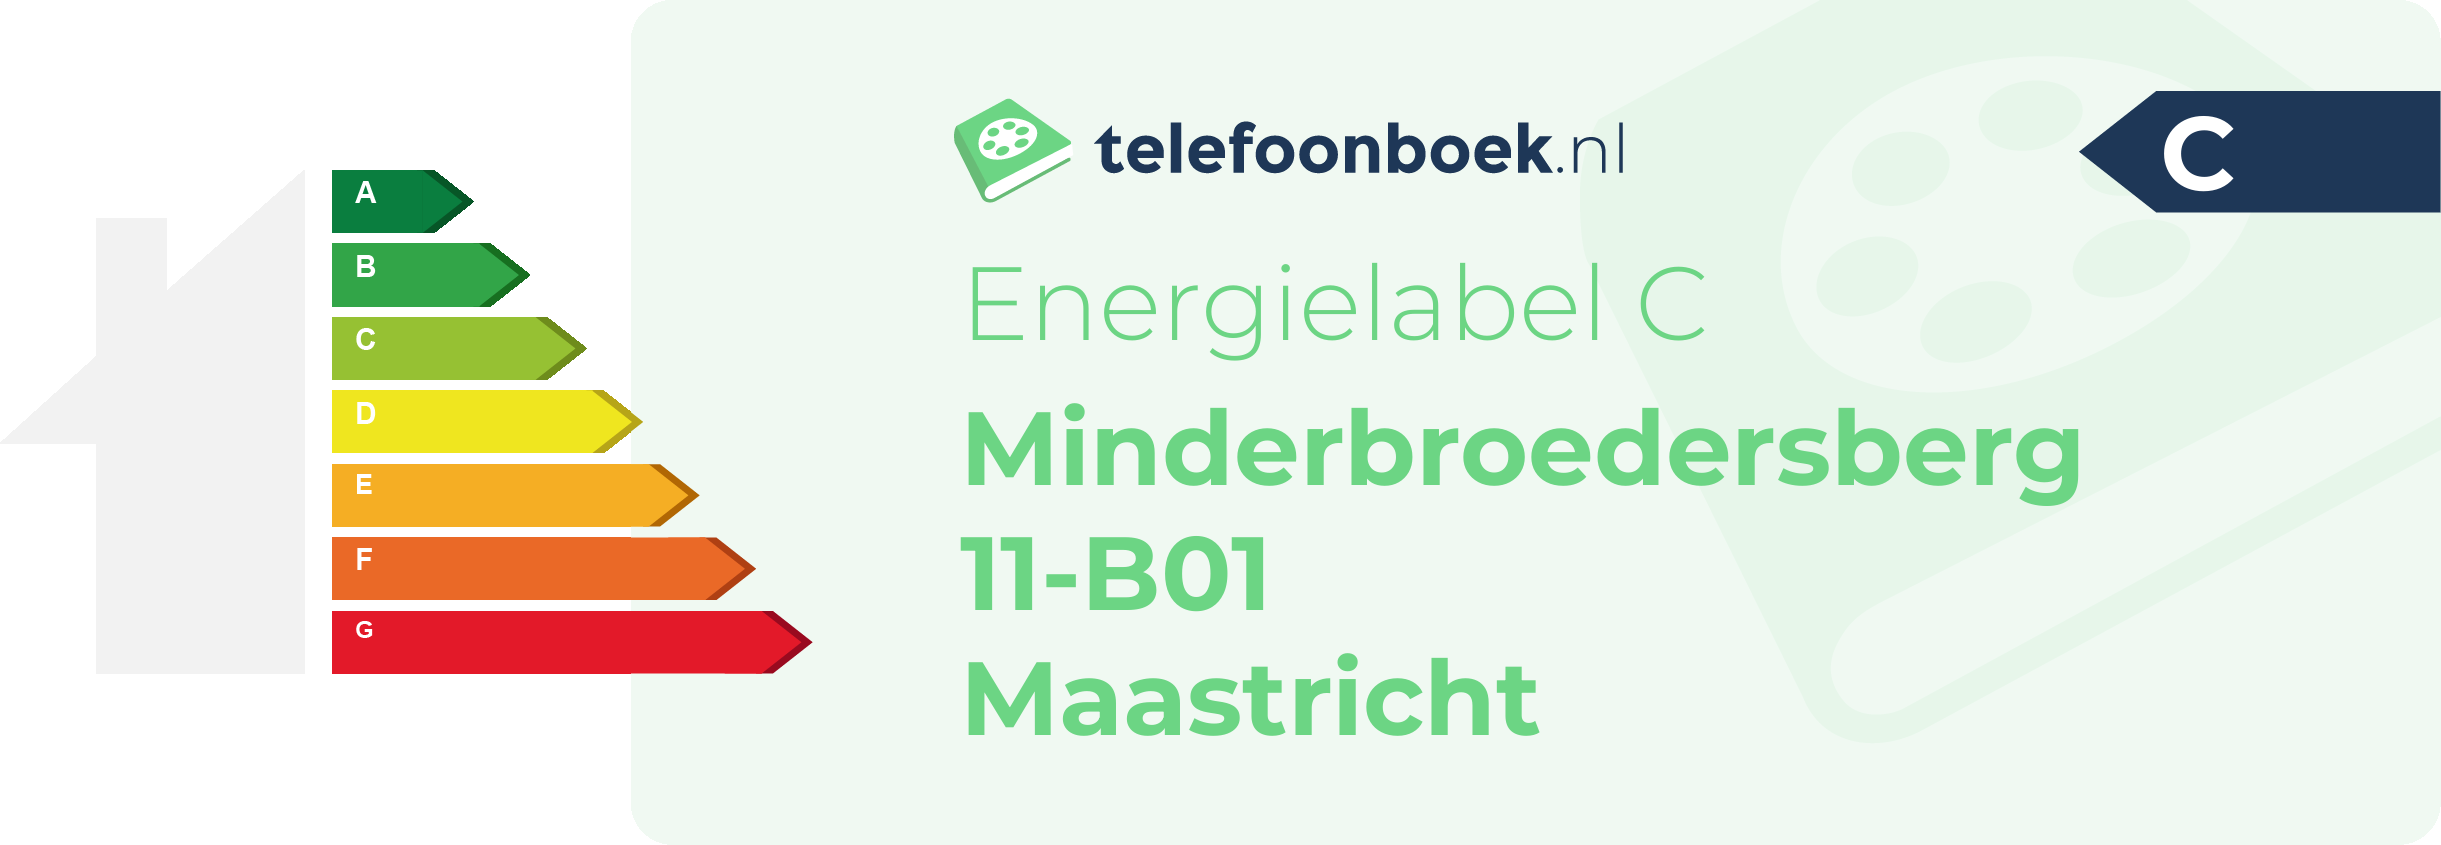 Energielabel Minderbroedersberg 11-B01 Maastricht